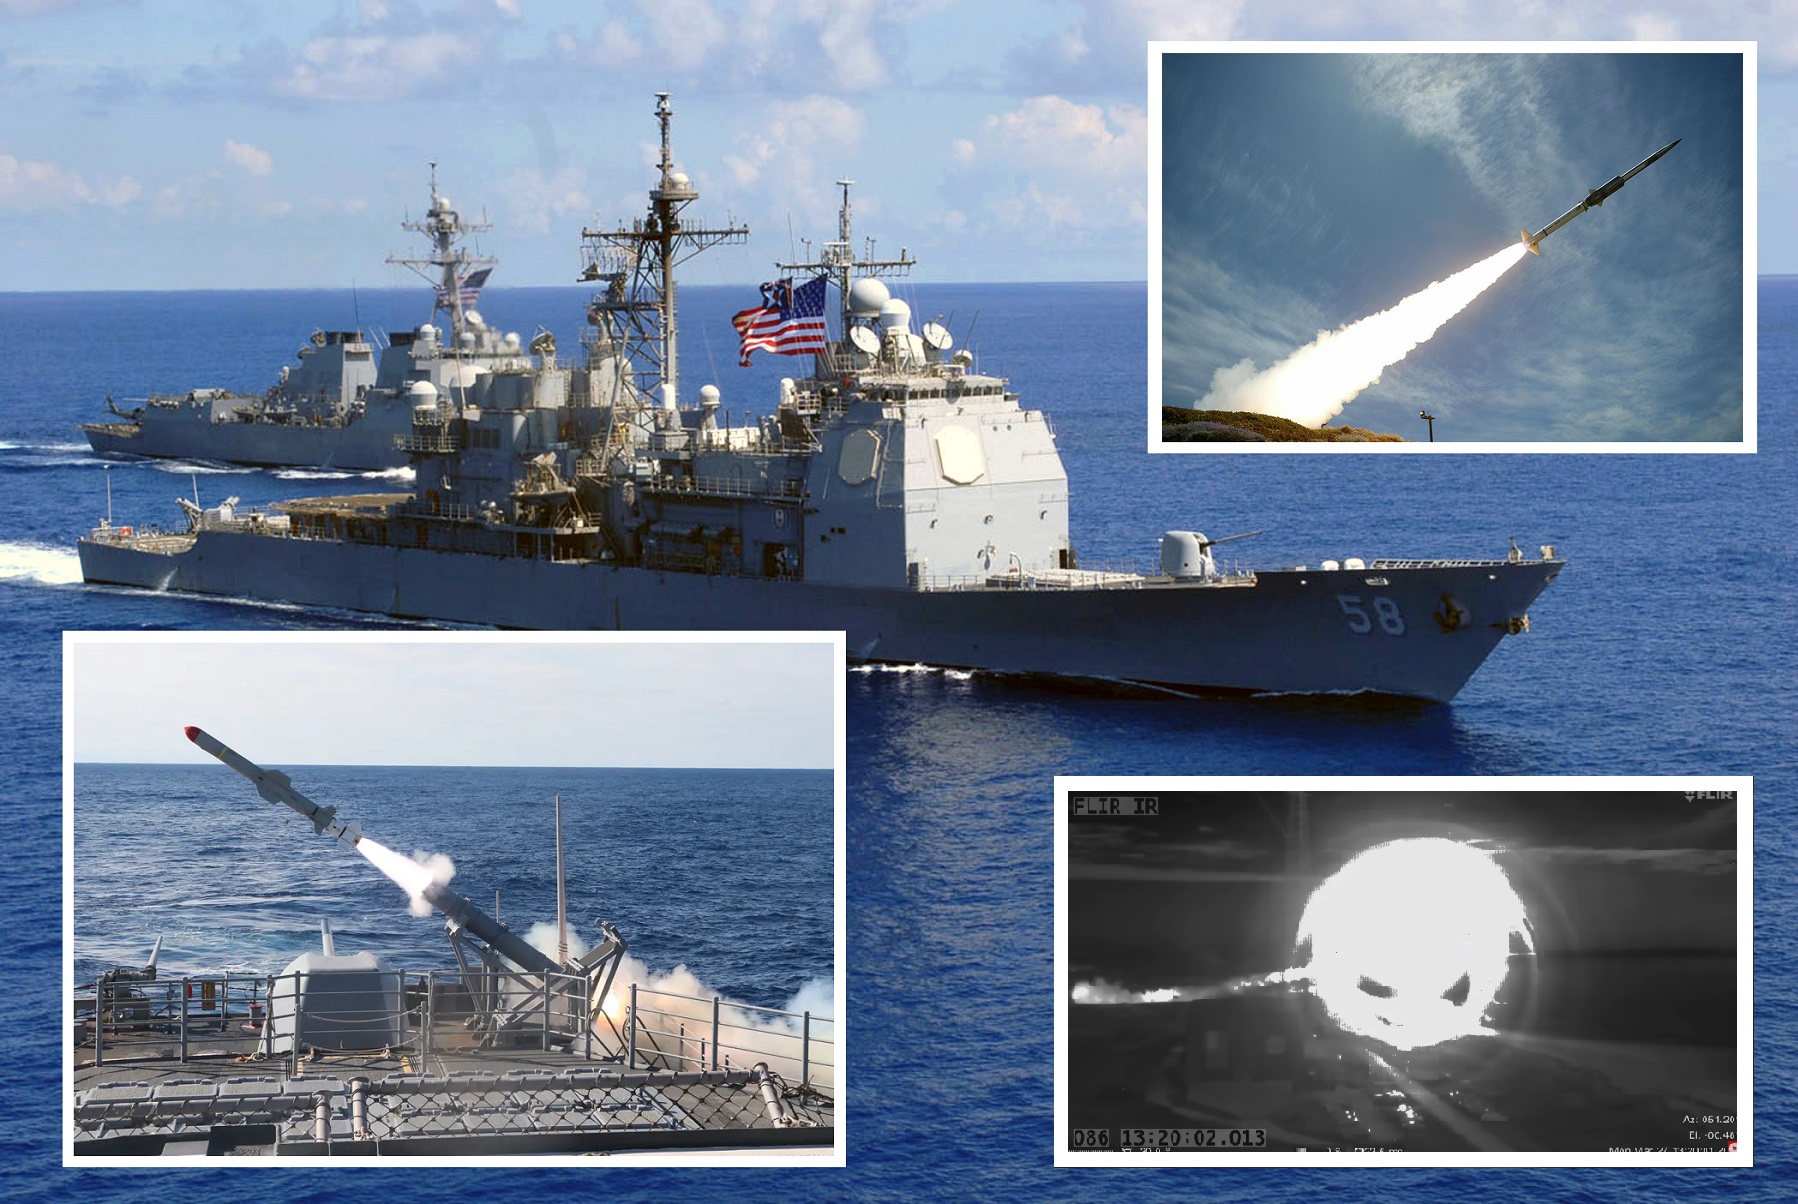 Il cacciatorpediniere USS Mason e l'incrociatore USS Philippine hanno distrutto il bersaglio supersonico GQM-163 Coyote con due missili SM-2 in pochi secondi.